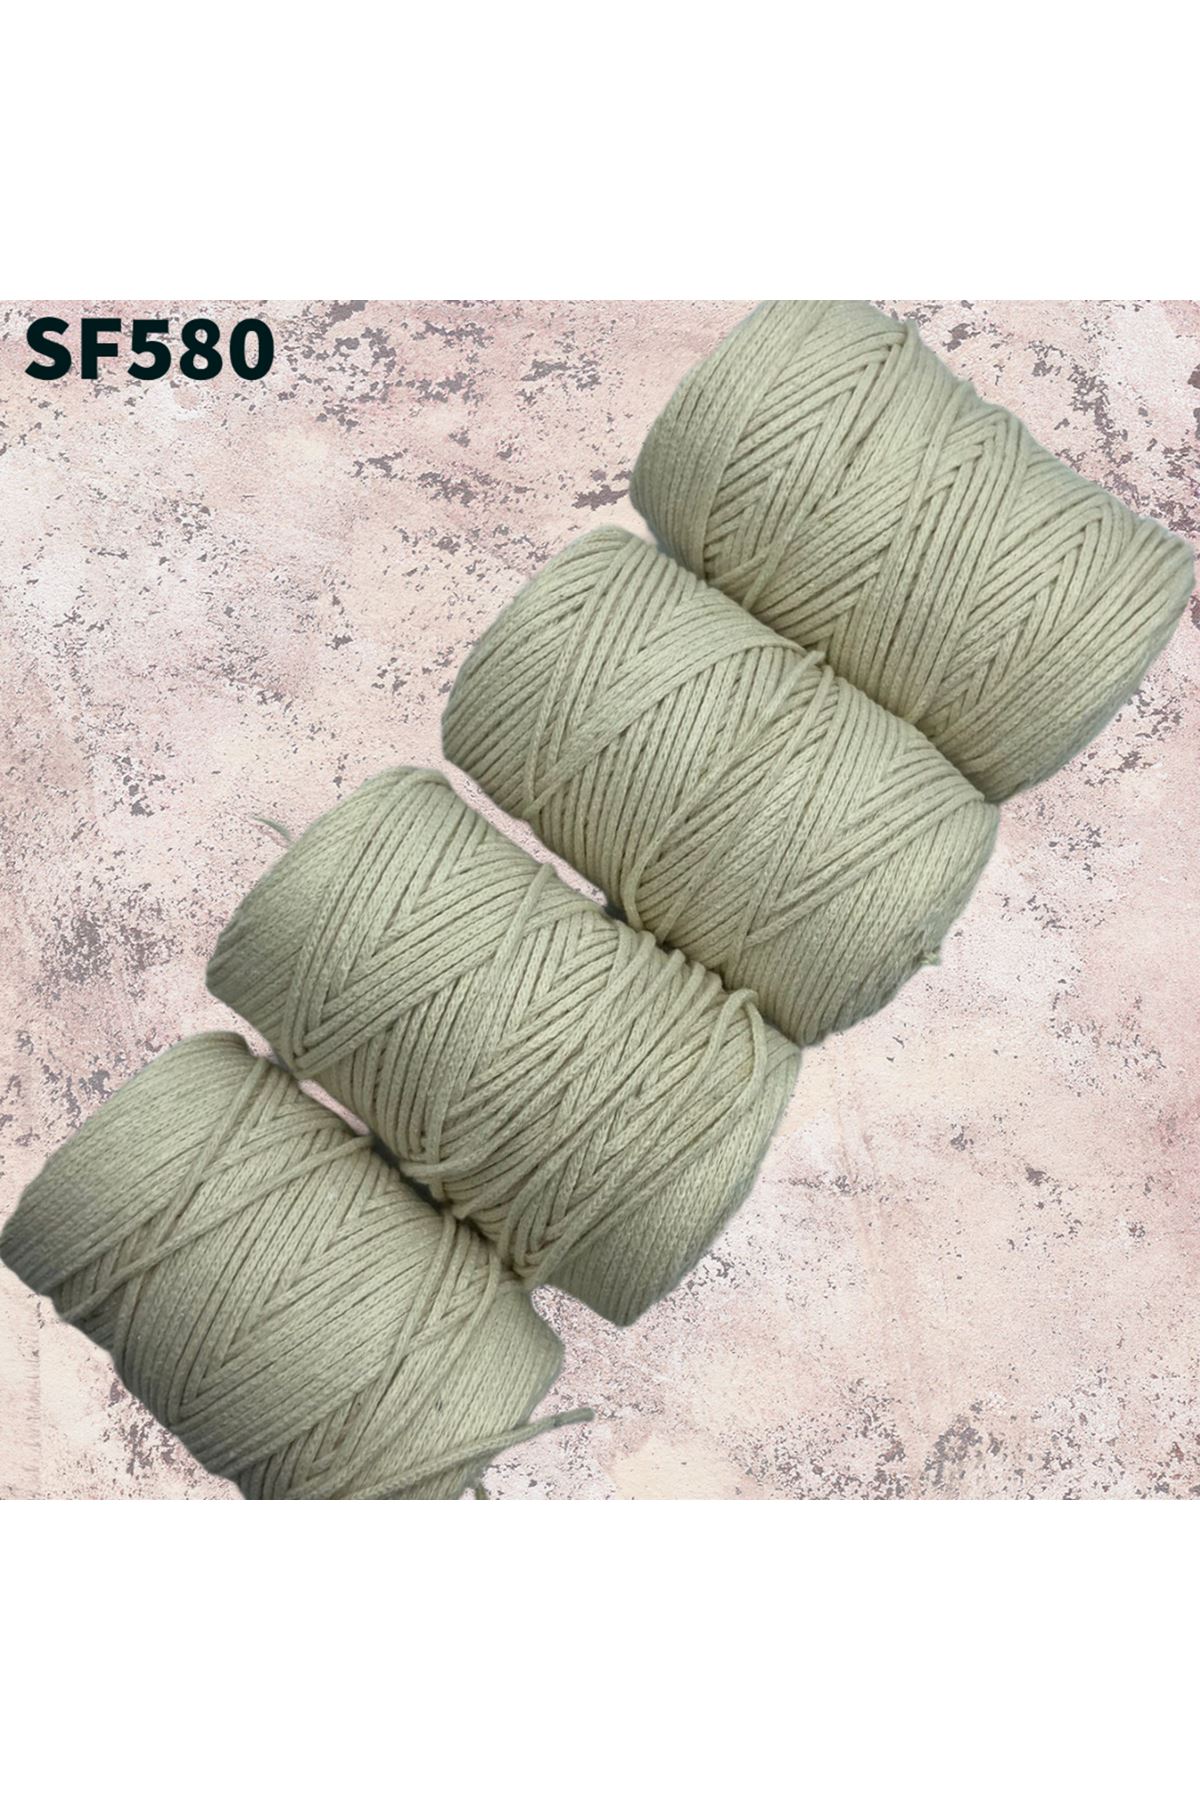 Stok Fazlası Cotton Makrome Krem 850 Gram SF580